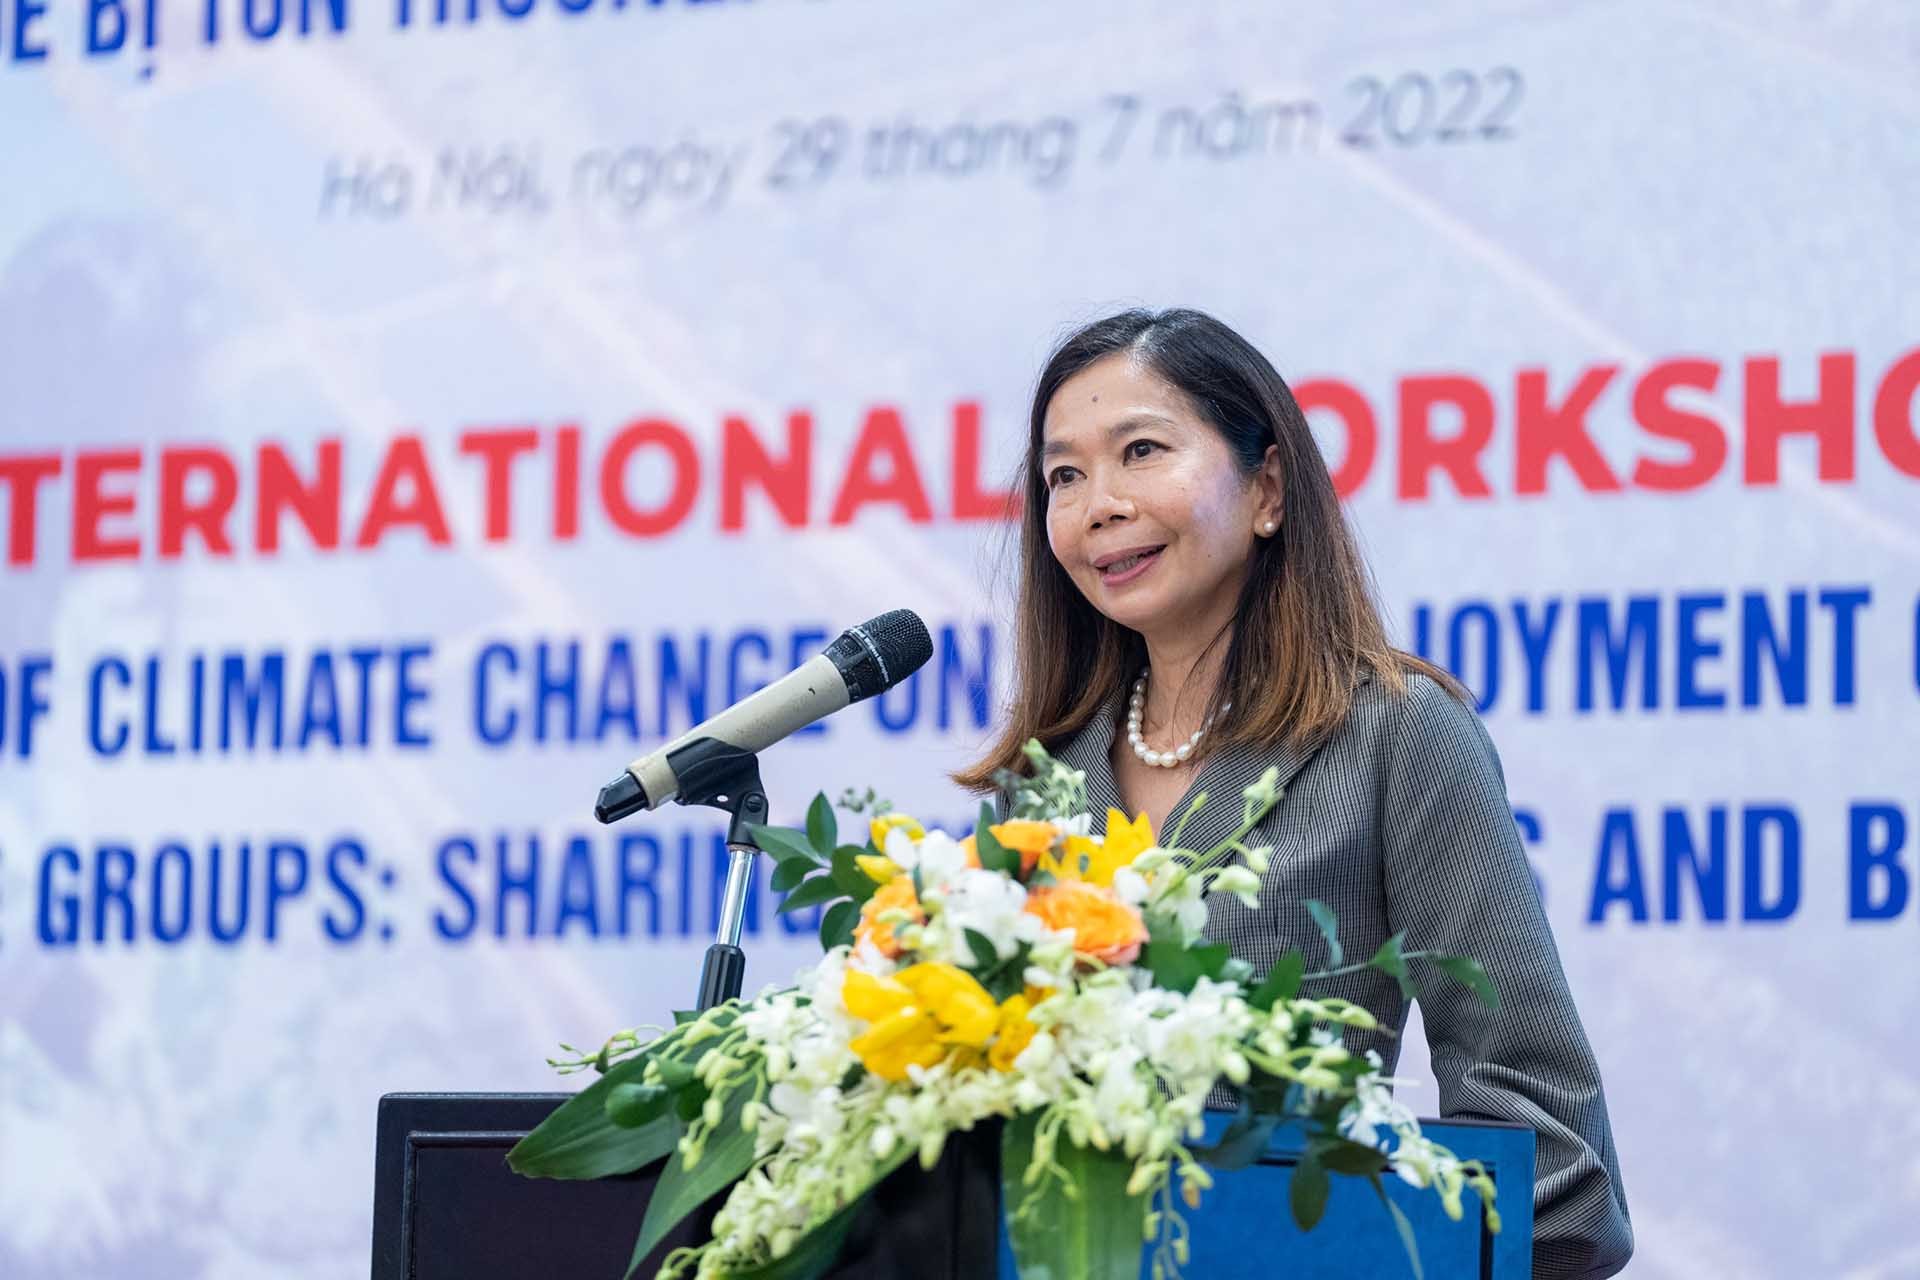 Việt Nam tiếp tục đẩy mạnh hợp tác và đối thoại nhằm thúc đẩy, bảo đảm quyền các nhóm dễ bị tổn thương trong ứng phó với biến đổi khí hậu